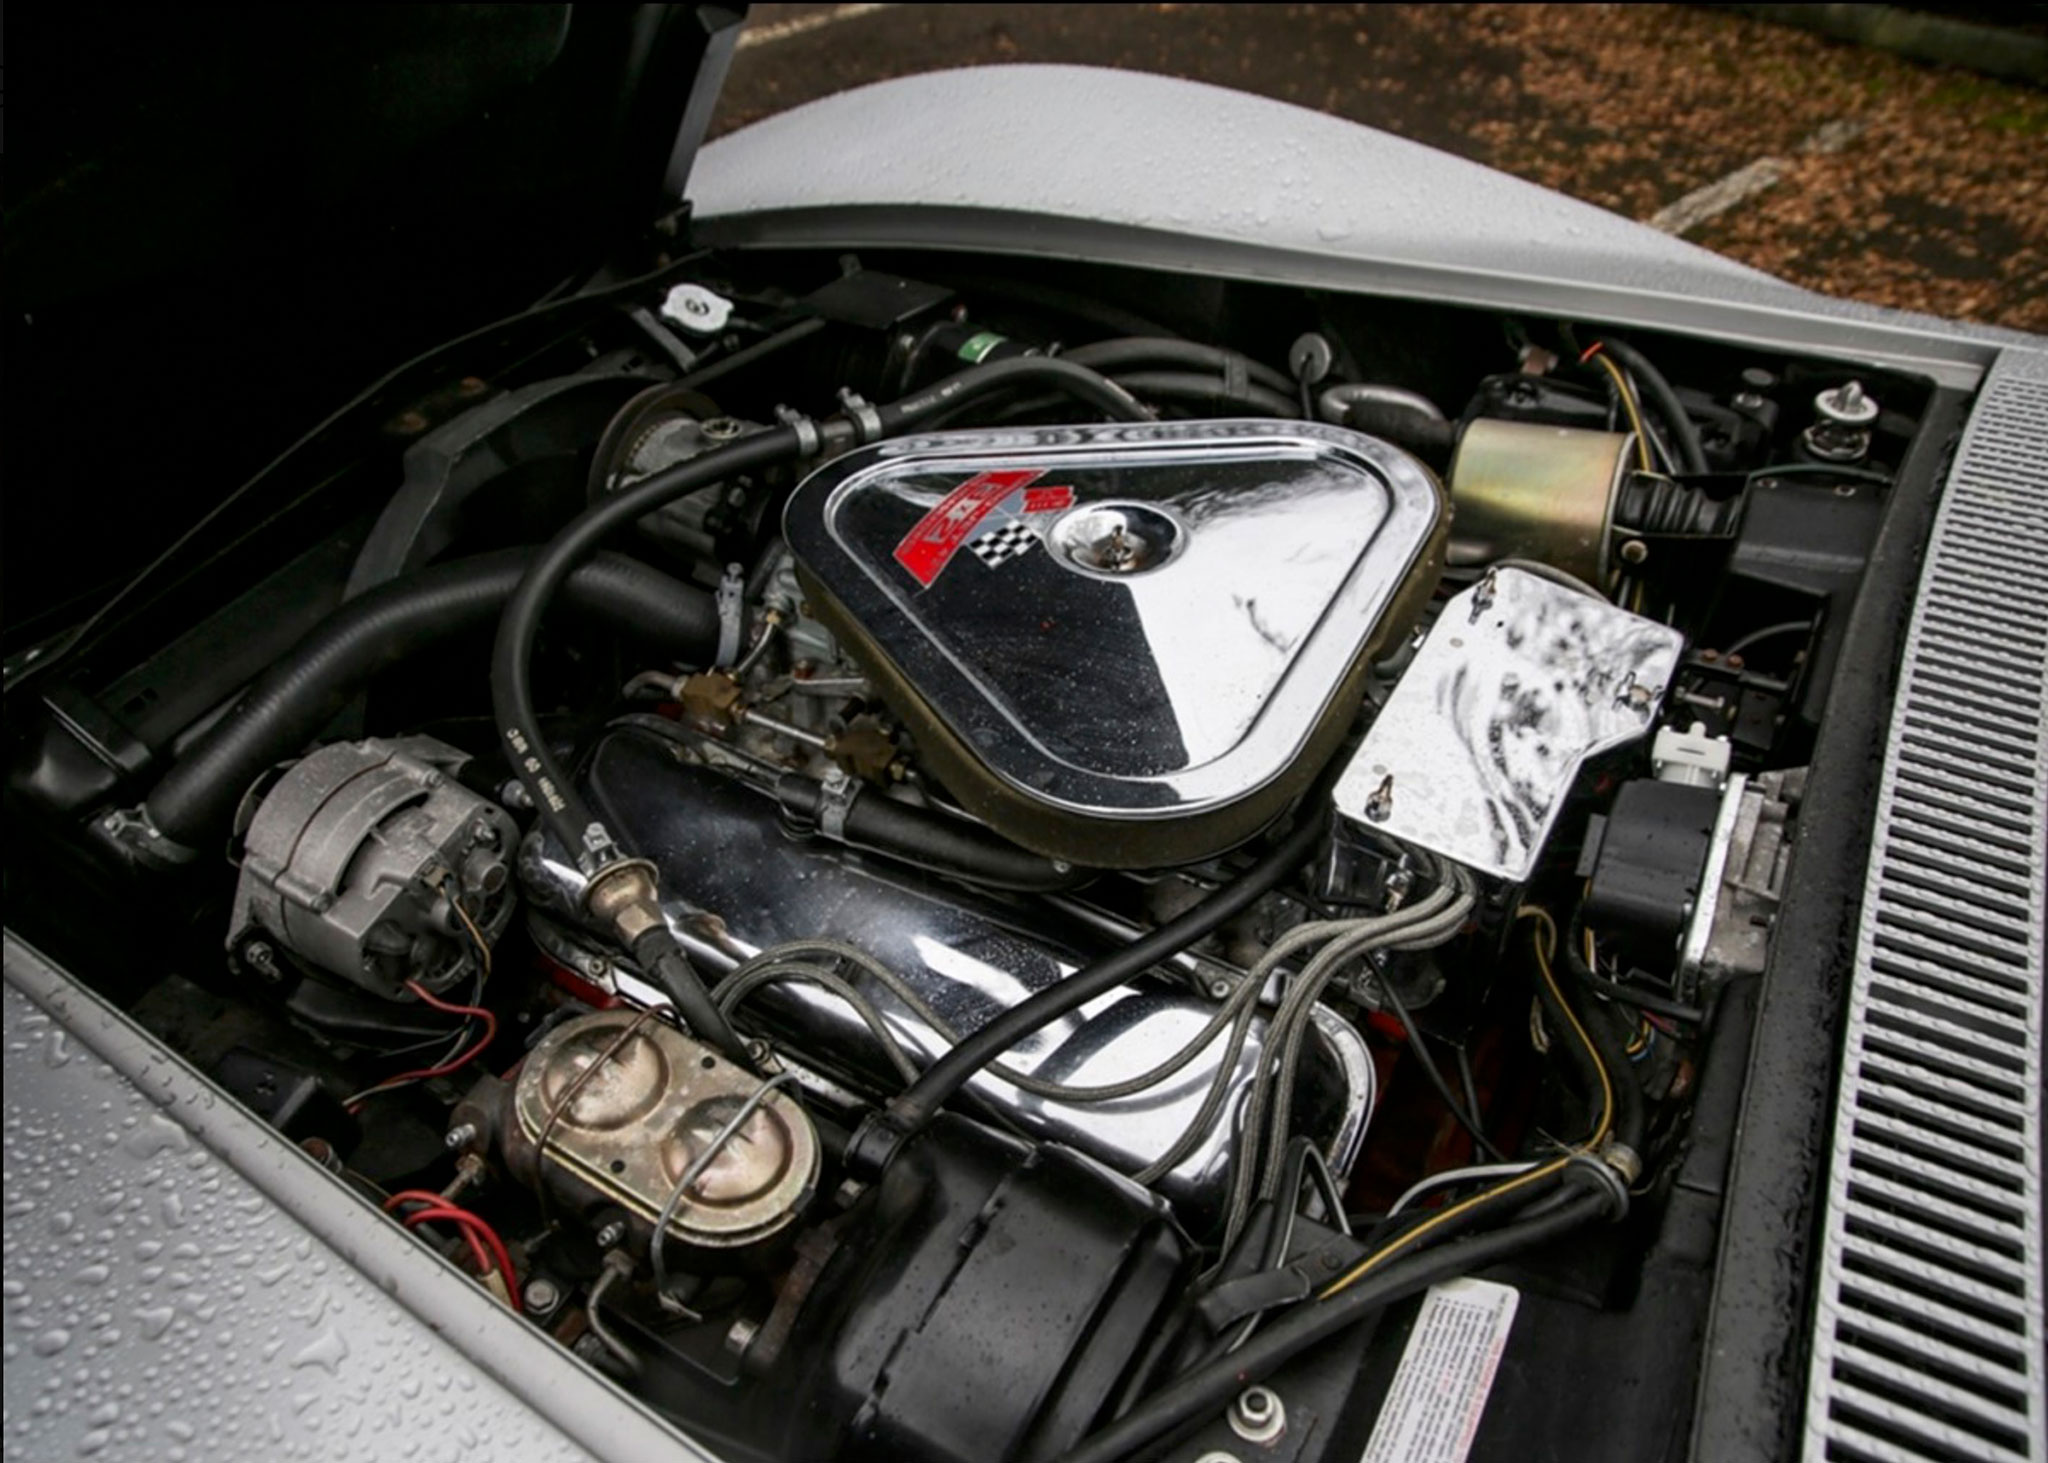 1968 Chevrolet Corvette C3 427 moteur de 7.0-litre et environ 400 chevaux - Ascot Racecourse avril 2021.